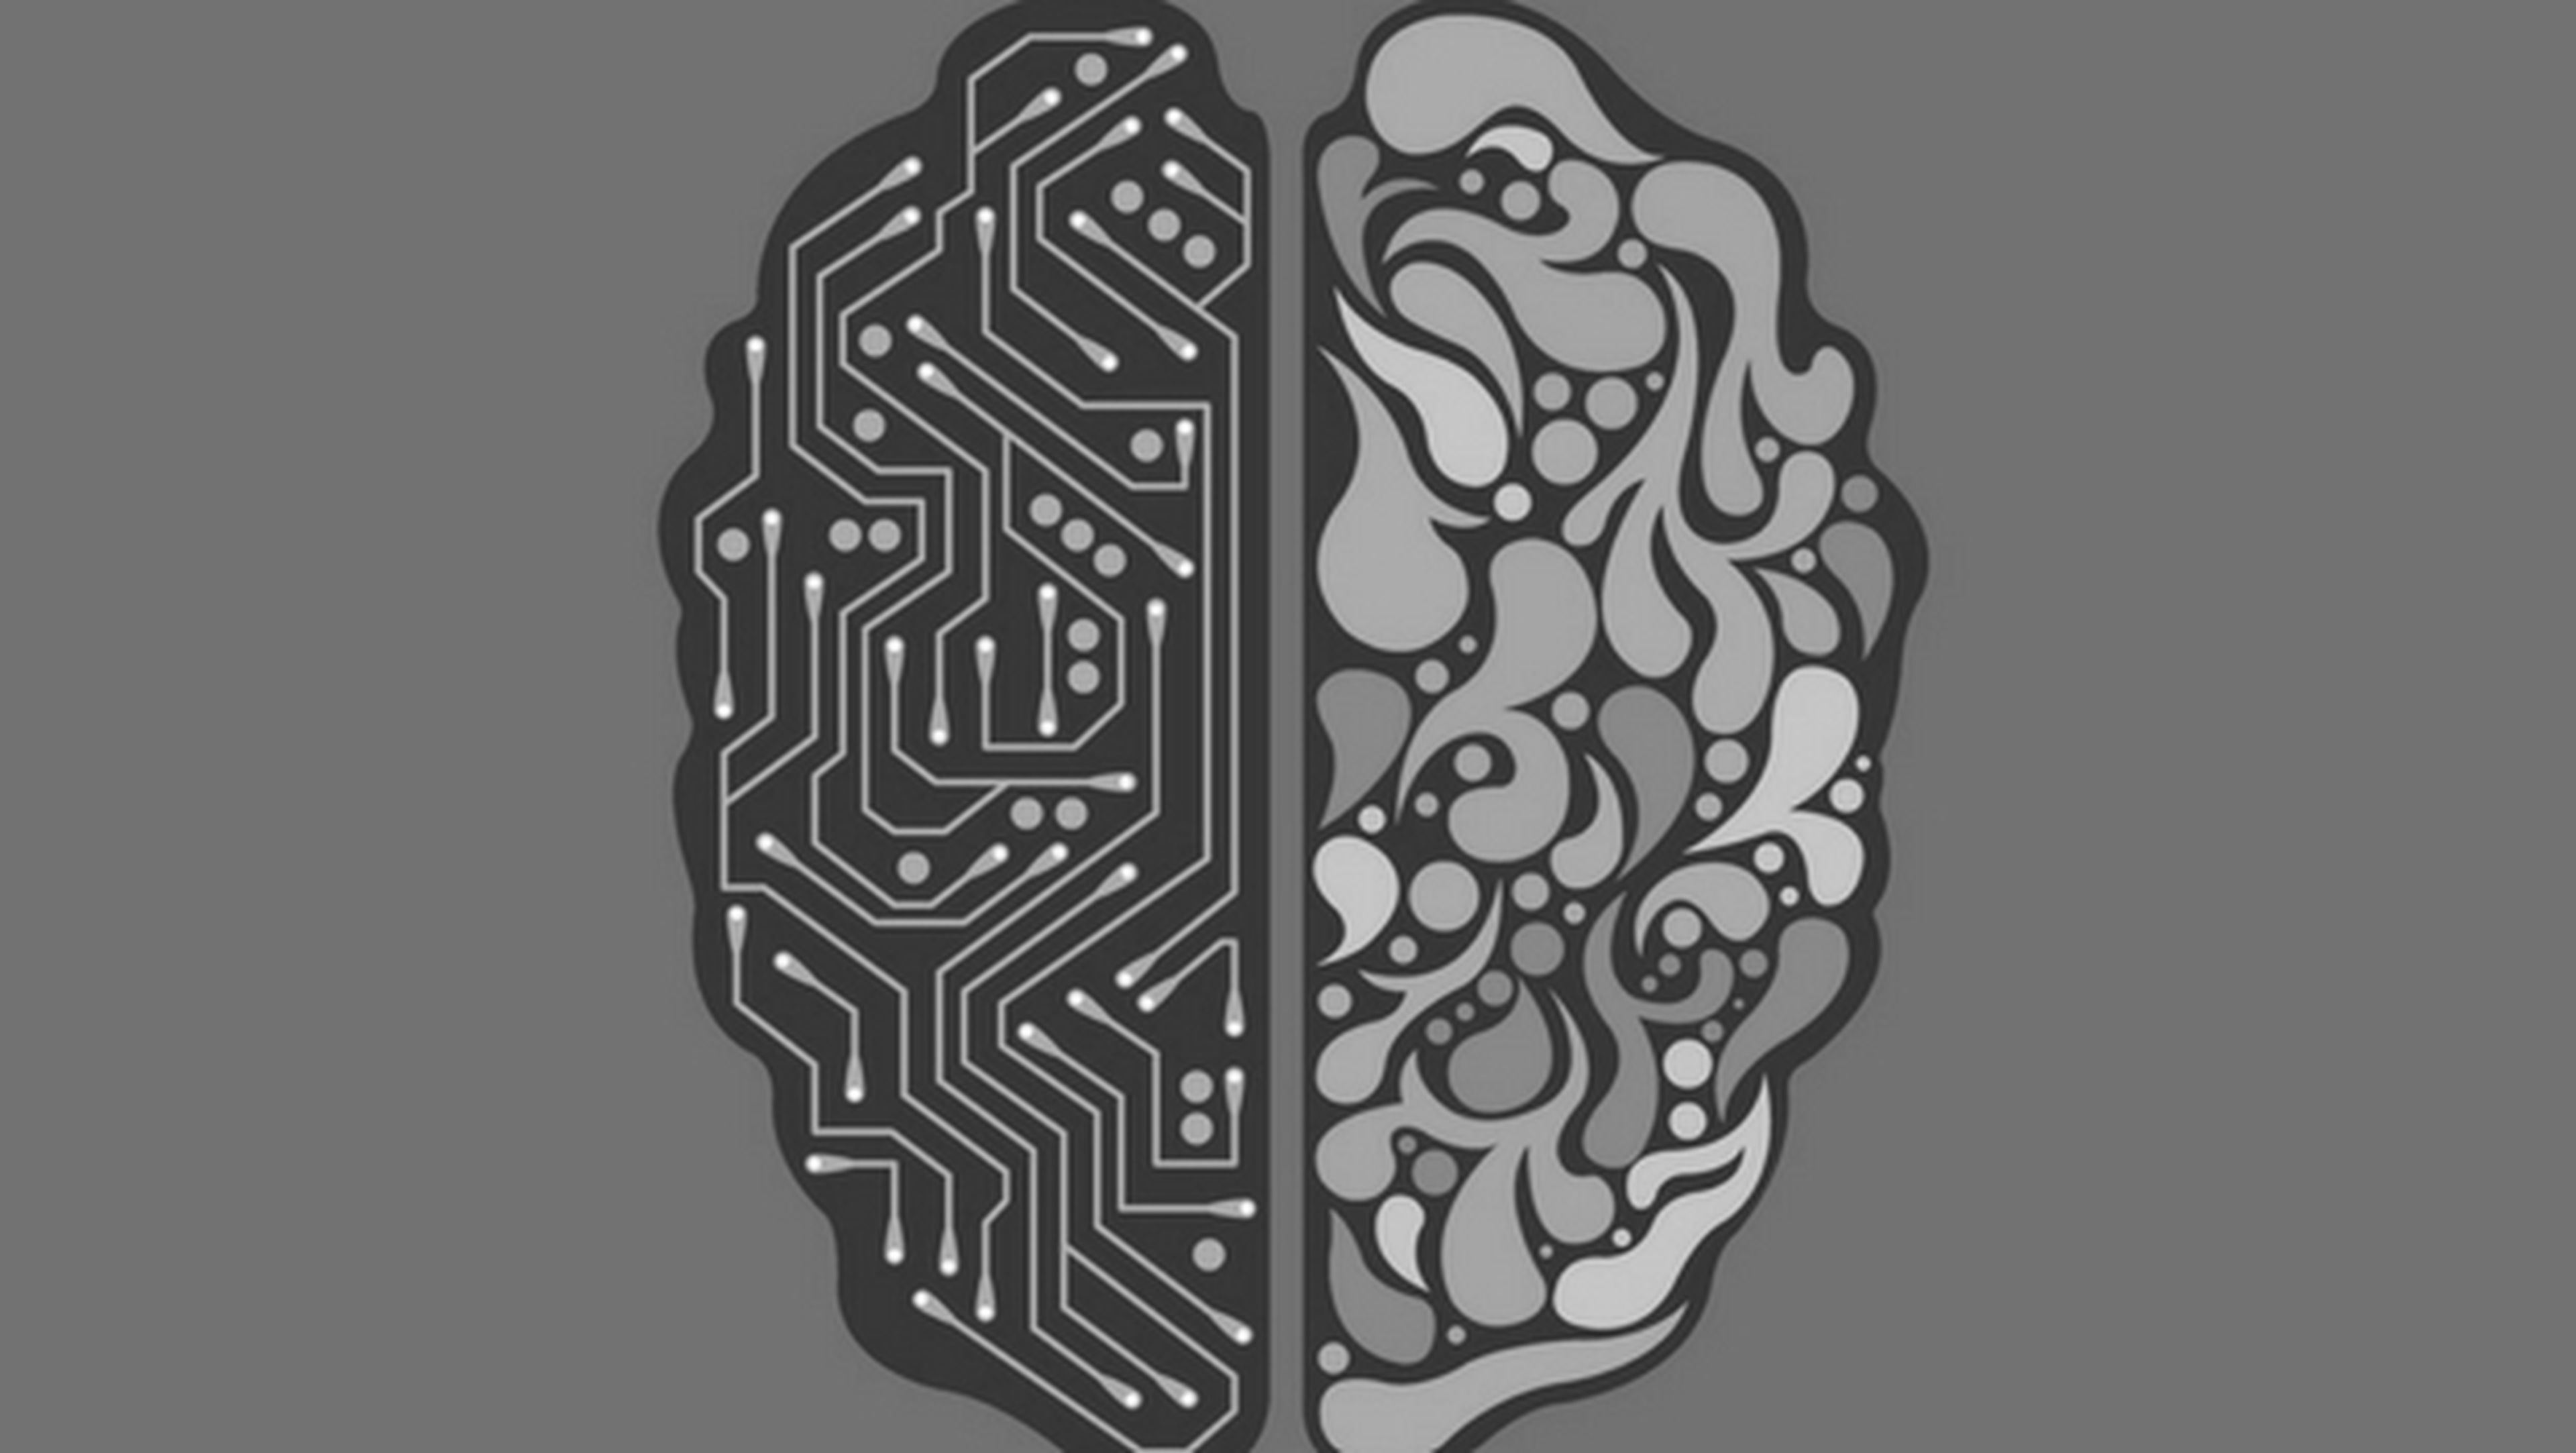 Patentes de Microsoft hacen posible que ordenadores puedan leer tu mente gracias al machine-learning